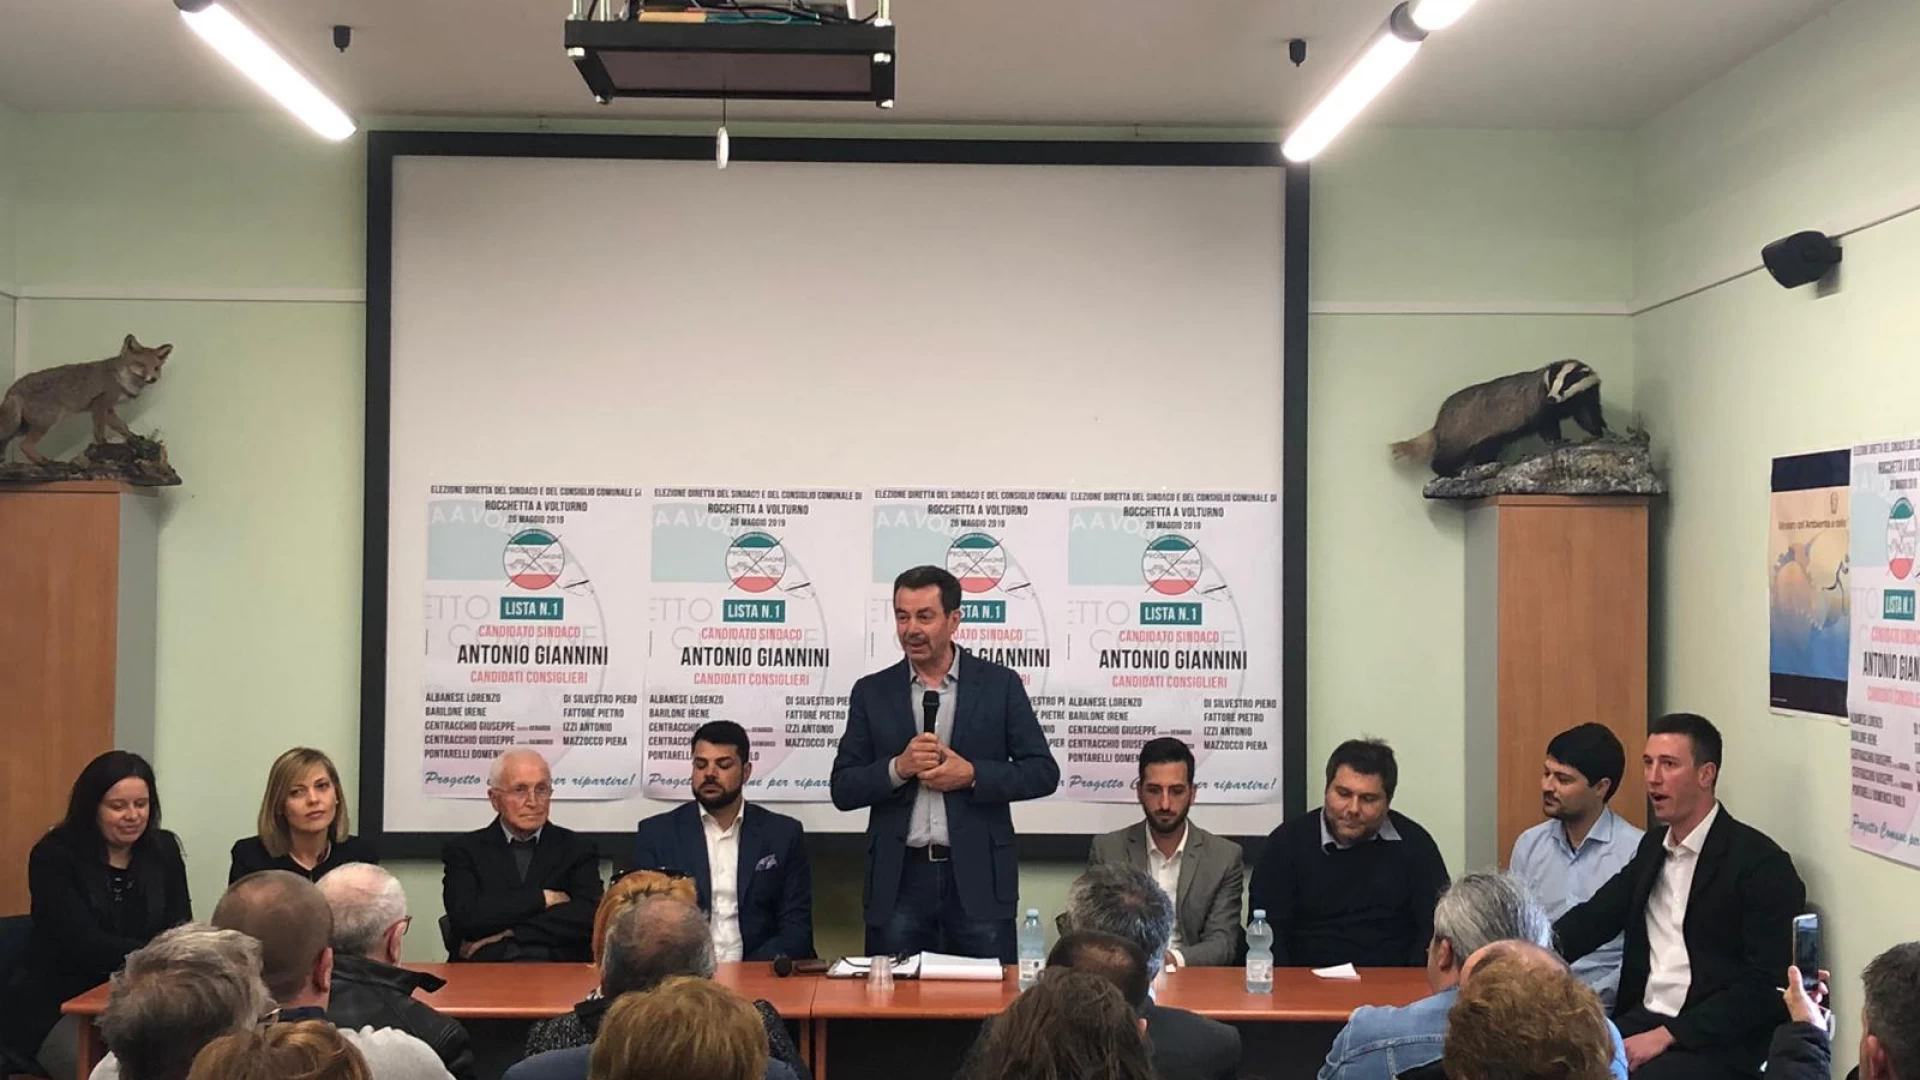 Rocchetta a Volturno: presentata la lista “Progetto Comune” con a capo Antonio Giannini come candidato sindaco.